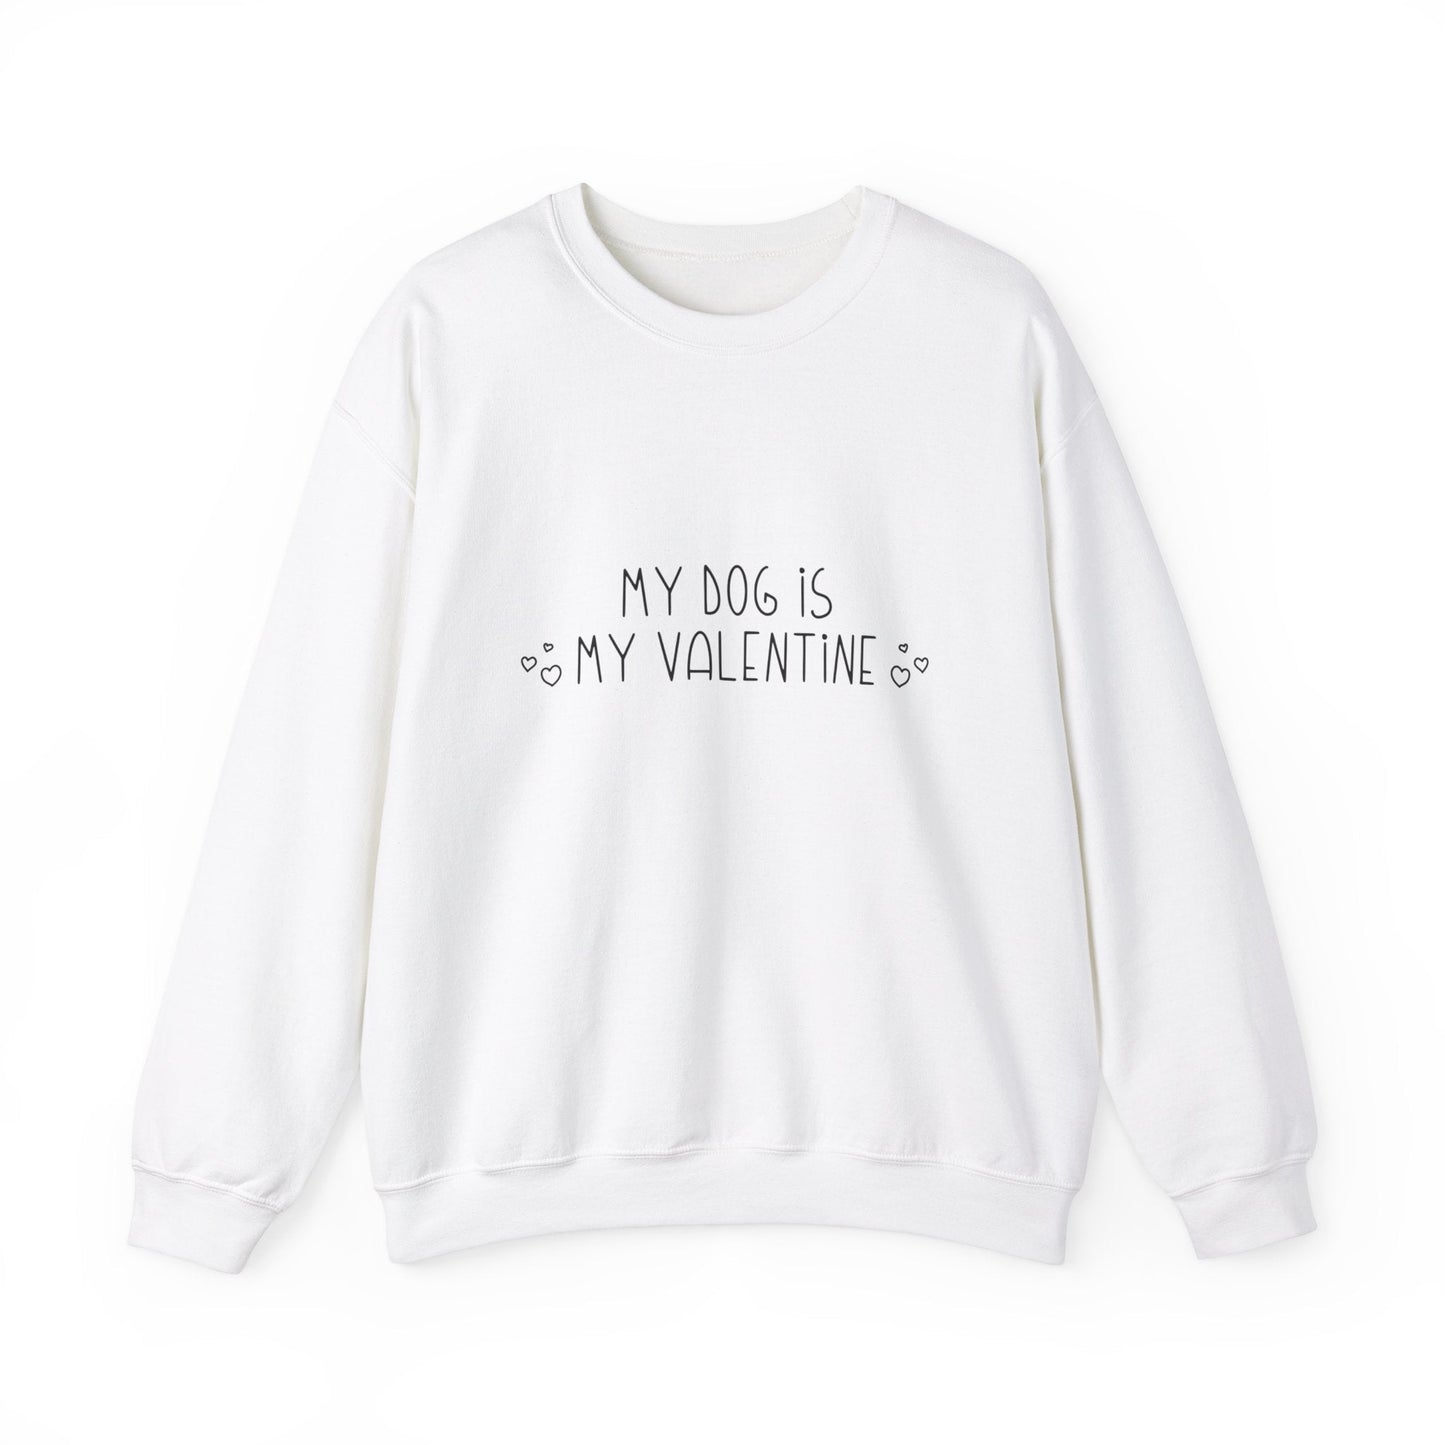 My Dog Is My Valentine | Crewneck Sweatshirt - Detezi Designs-16343889309415297097